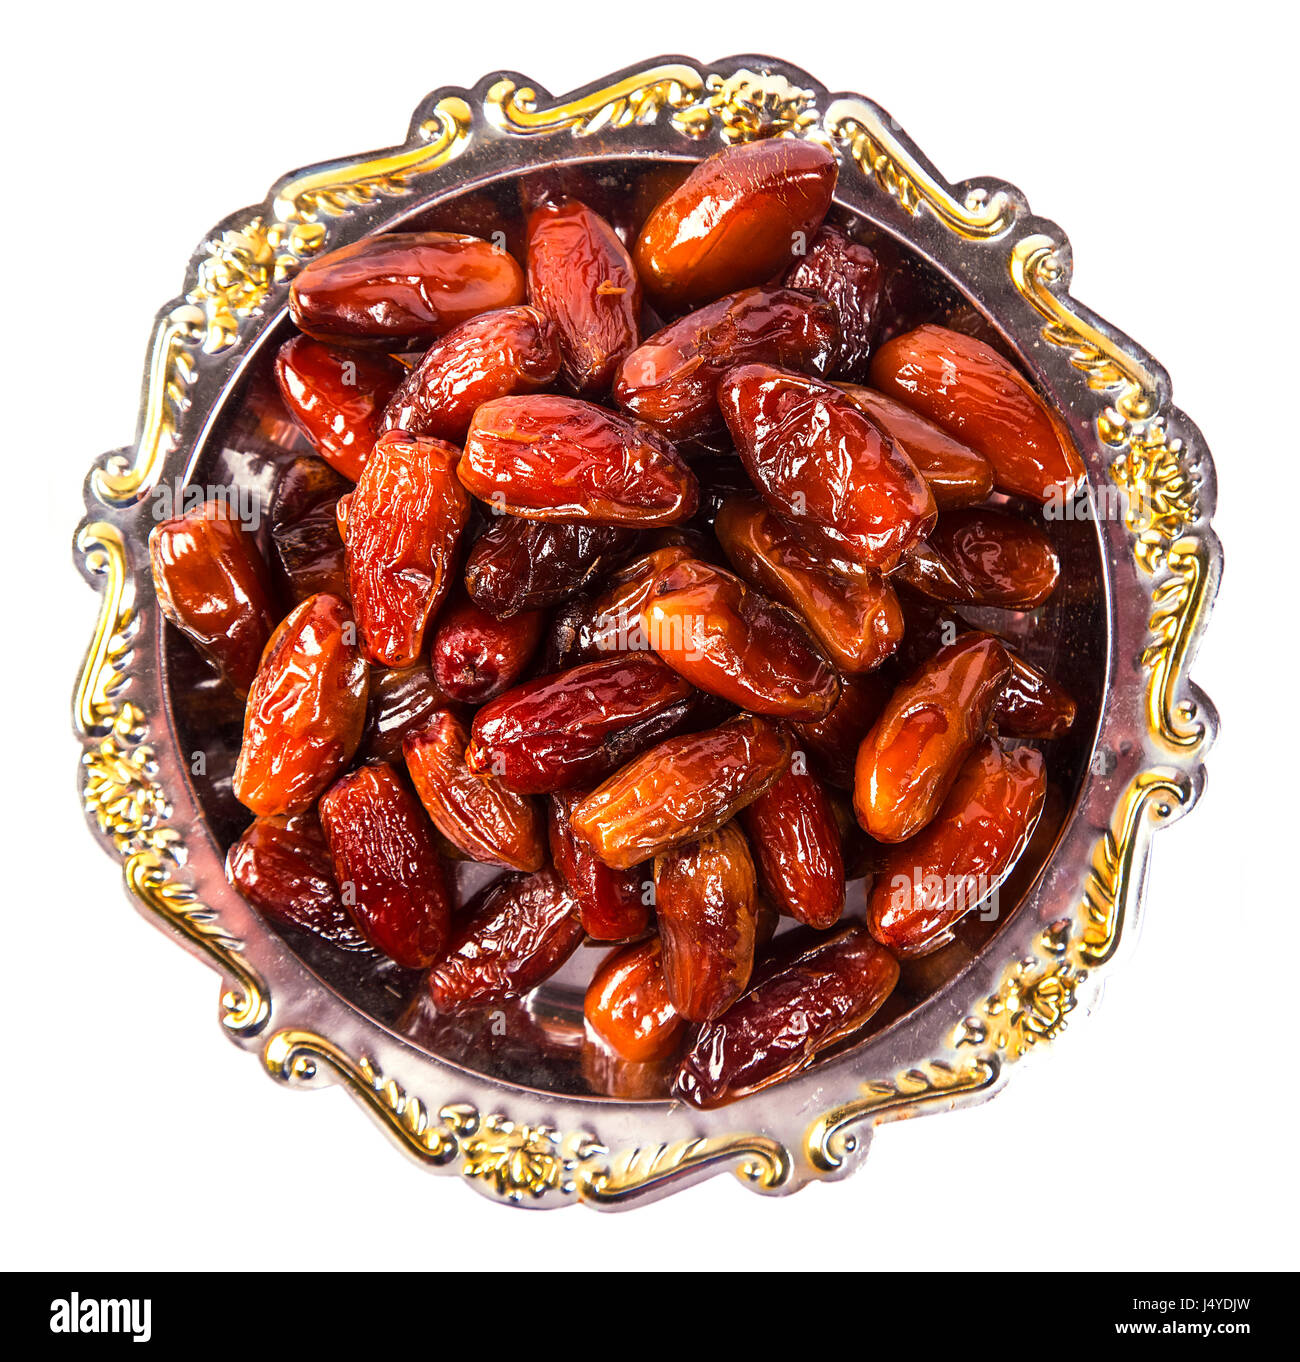 Schöne Termine Obst auf einem silbernen Tablett isoliert auf weißem Hintergrund. Das muslimische Opferfest des Heiligen Monats Ramadan Kareem. Stockfoto